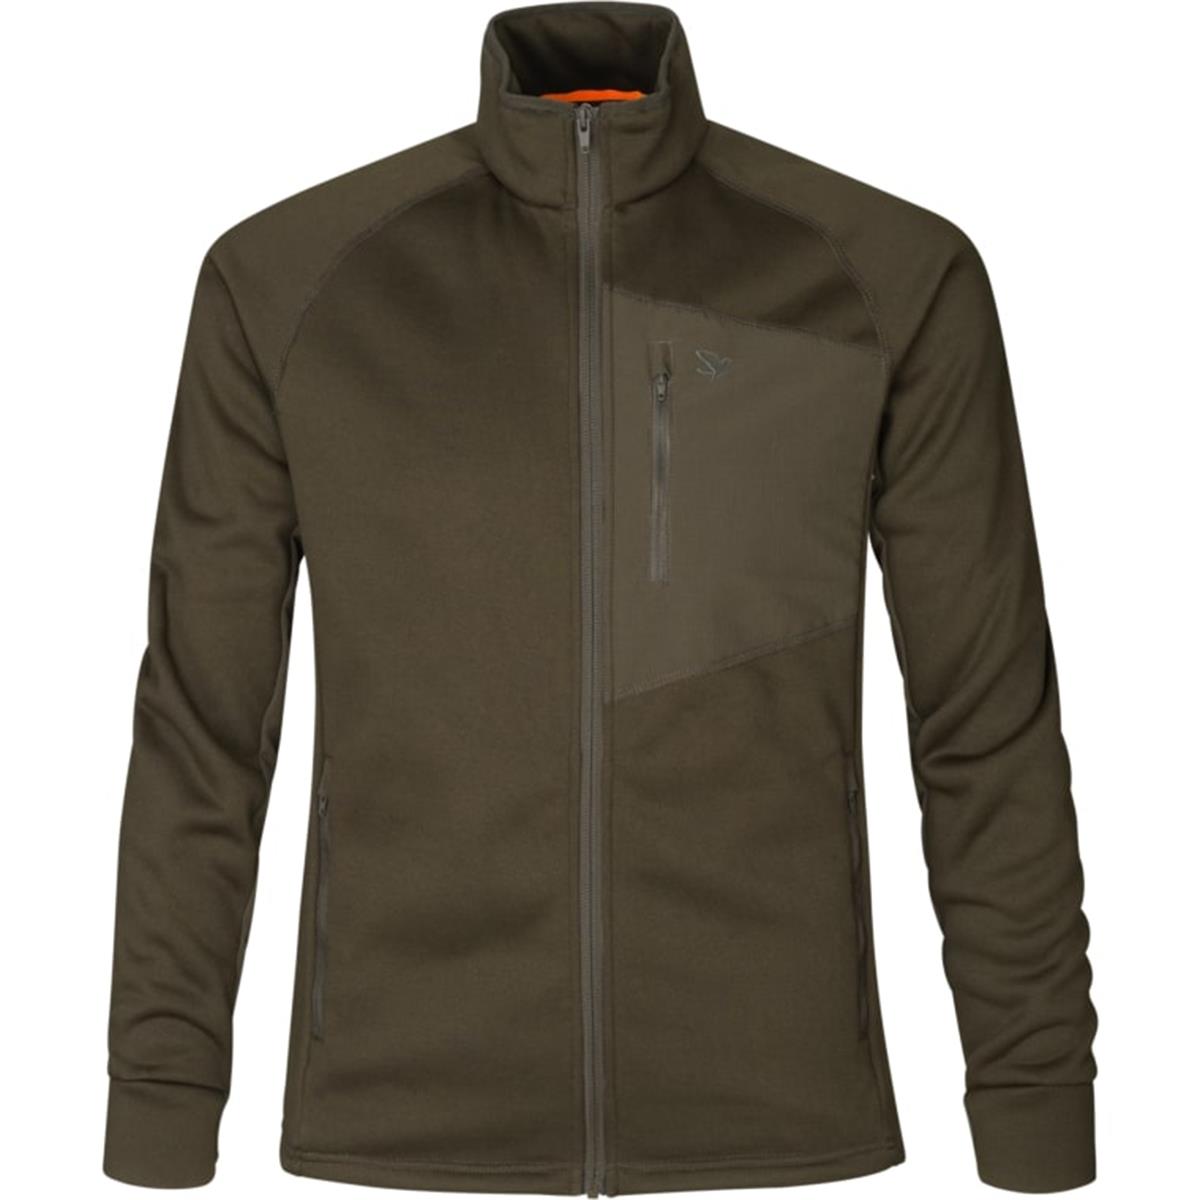 Куртка Key-Point fleece Pine green SEELAND светодиодная гирлянда uniel uld s0280 020 dta warm white ip20 pine cones шишки 9582